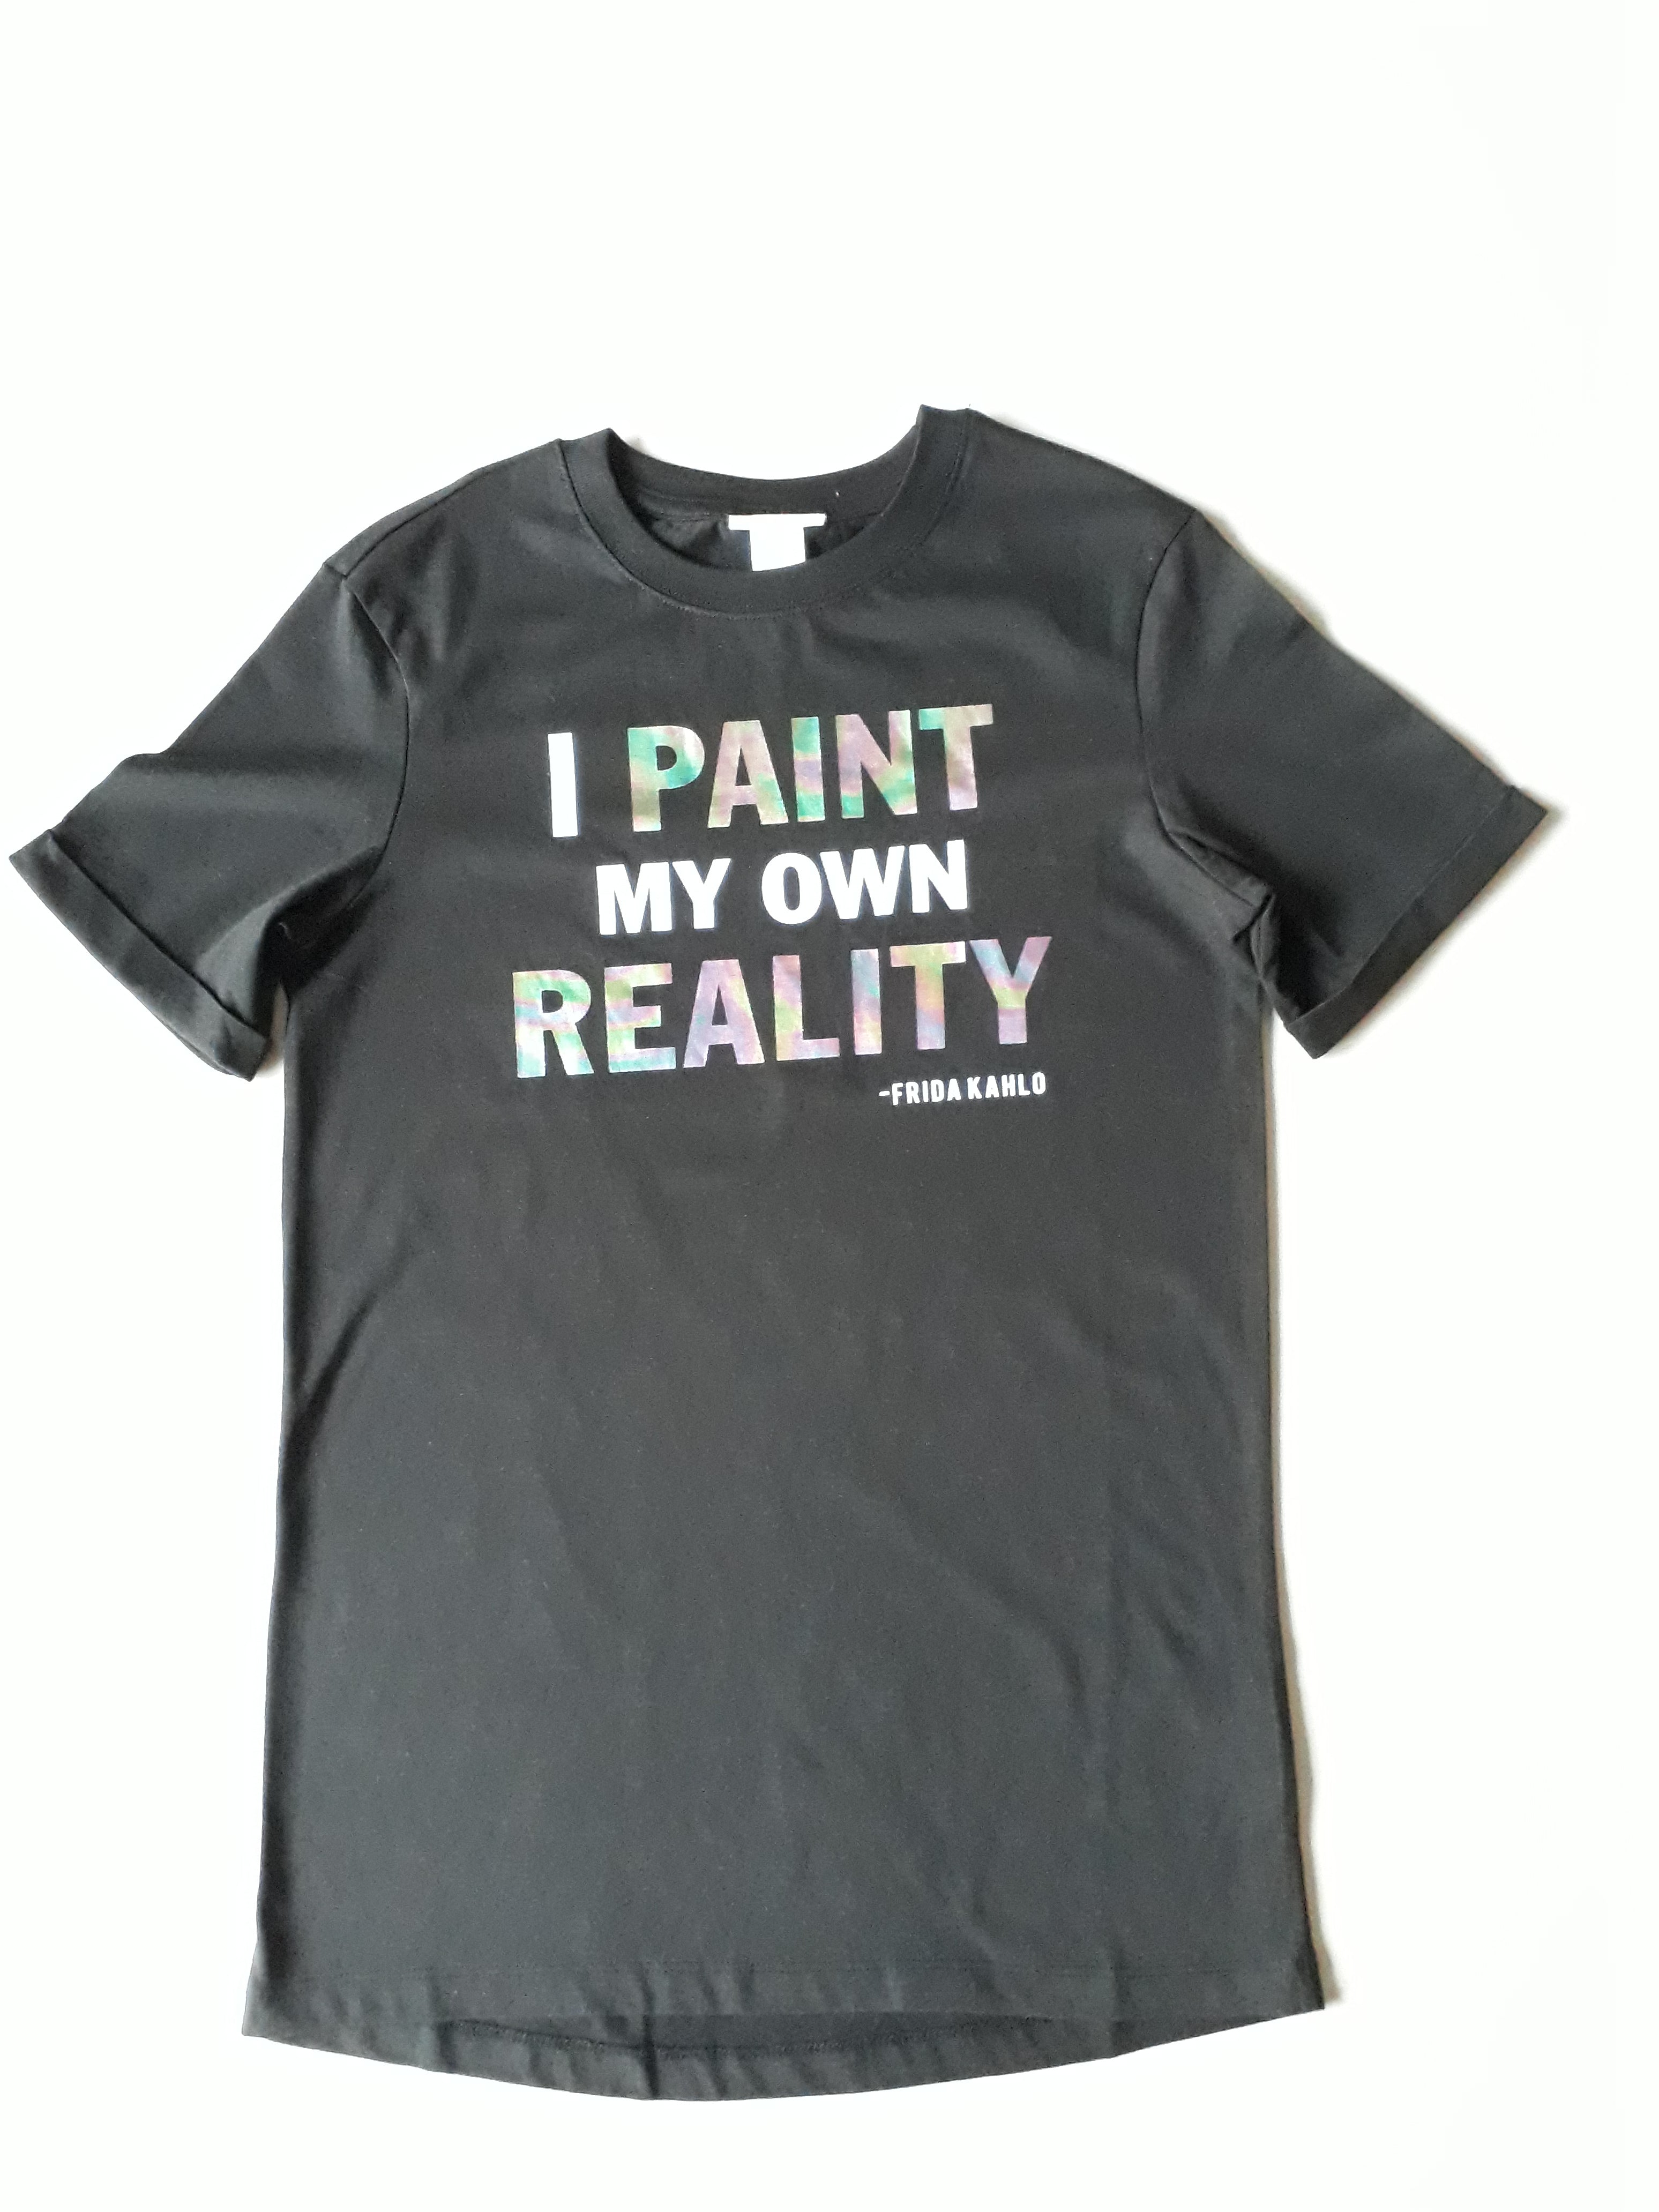 T-shirt "I paint my own reality" Tiener - 2dehands nieuw